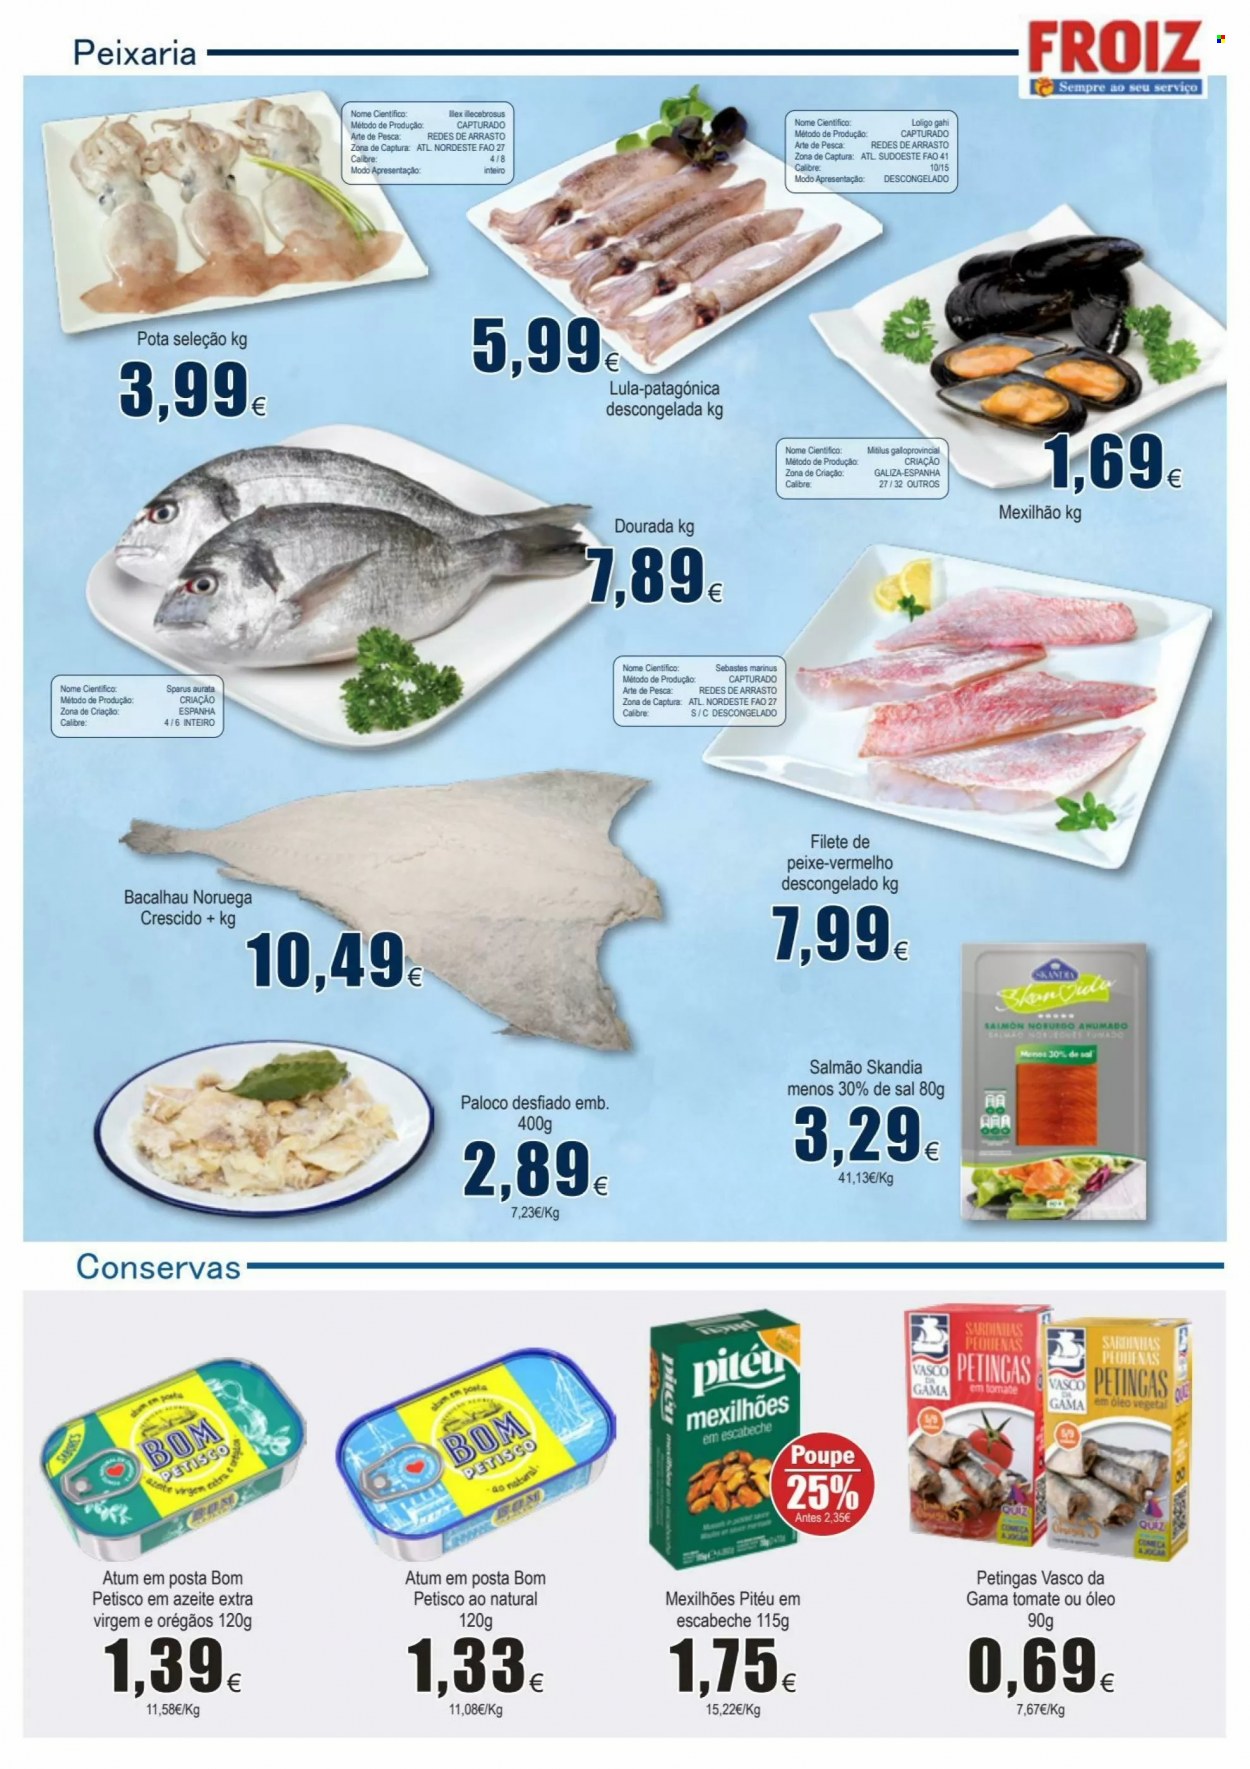 thumbnail - Folheto Froiz - 7.1.2022 - 26.1.2022 - Produtos em promoção - salmão, bacalhau, atum, lula, filetes de peixe, paloco, mexilhão, sardinhas, petingas. Página 4.